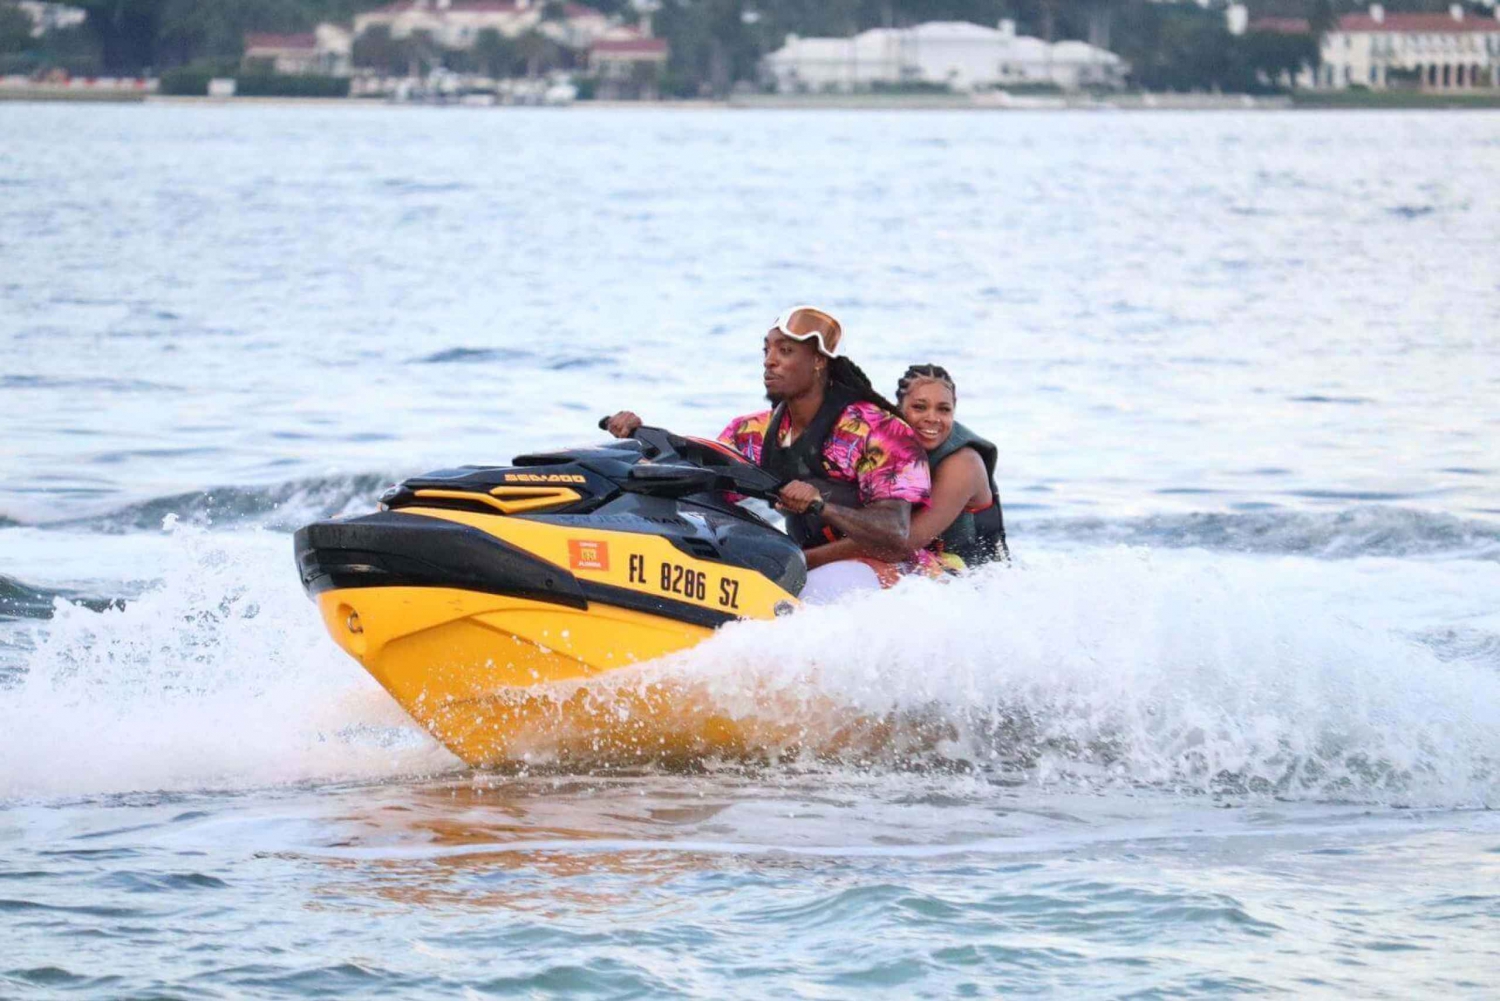 Miami: Jet Ski & Boat Ride on the Bay in Miami